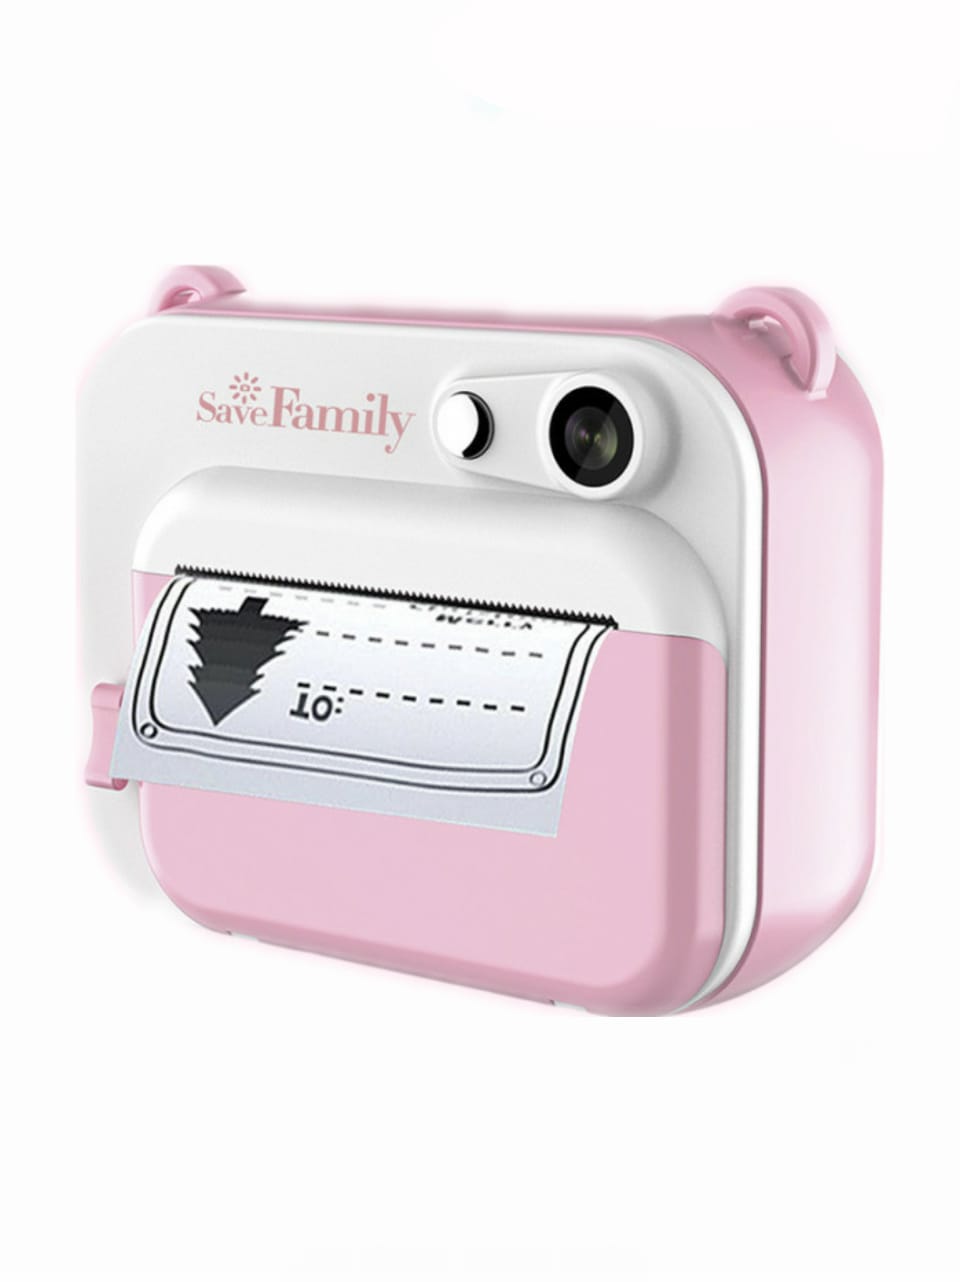 Comprar Save Family Cámara instantánea para Niños Sweet Pink